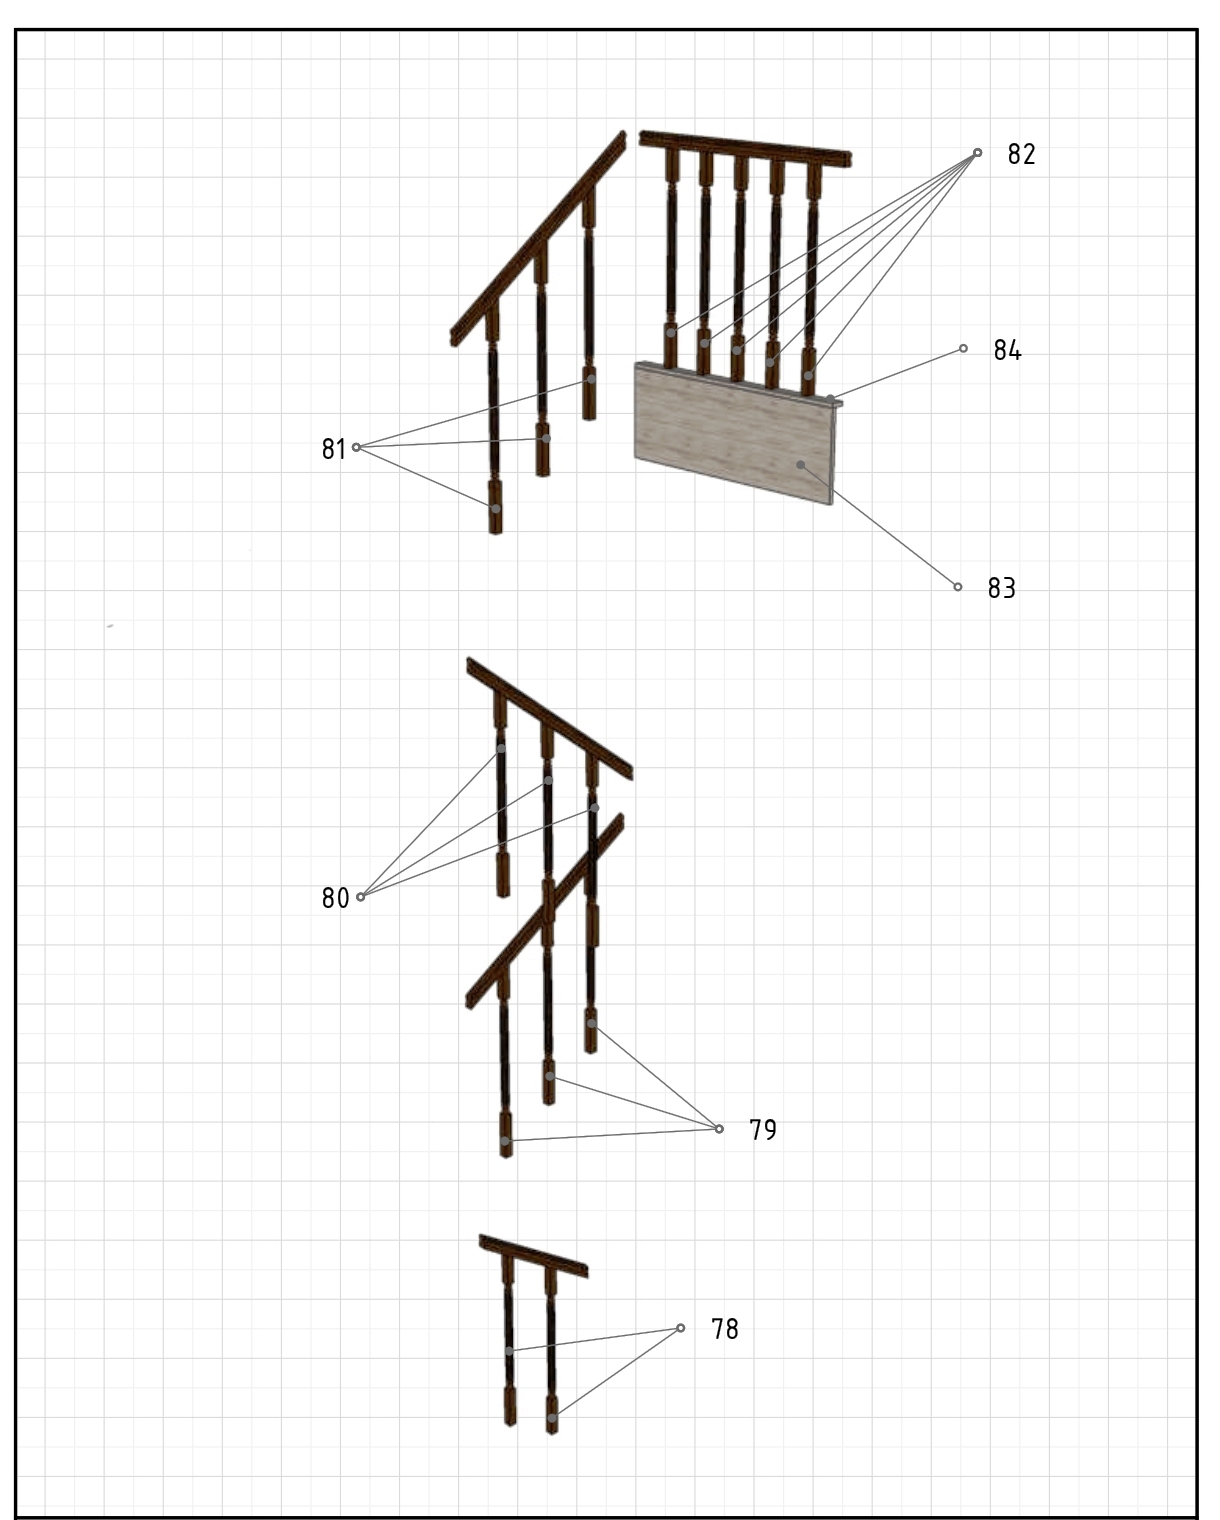 проект лестниц с 1 на 2 и 3 этаж загородного дома